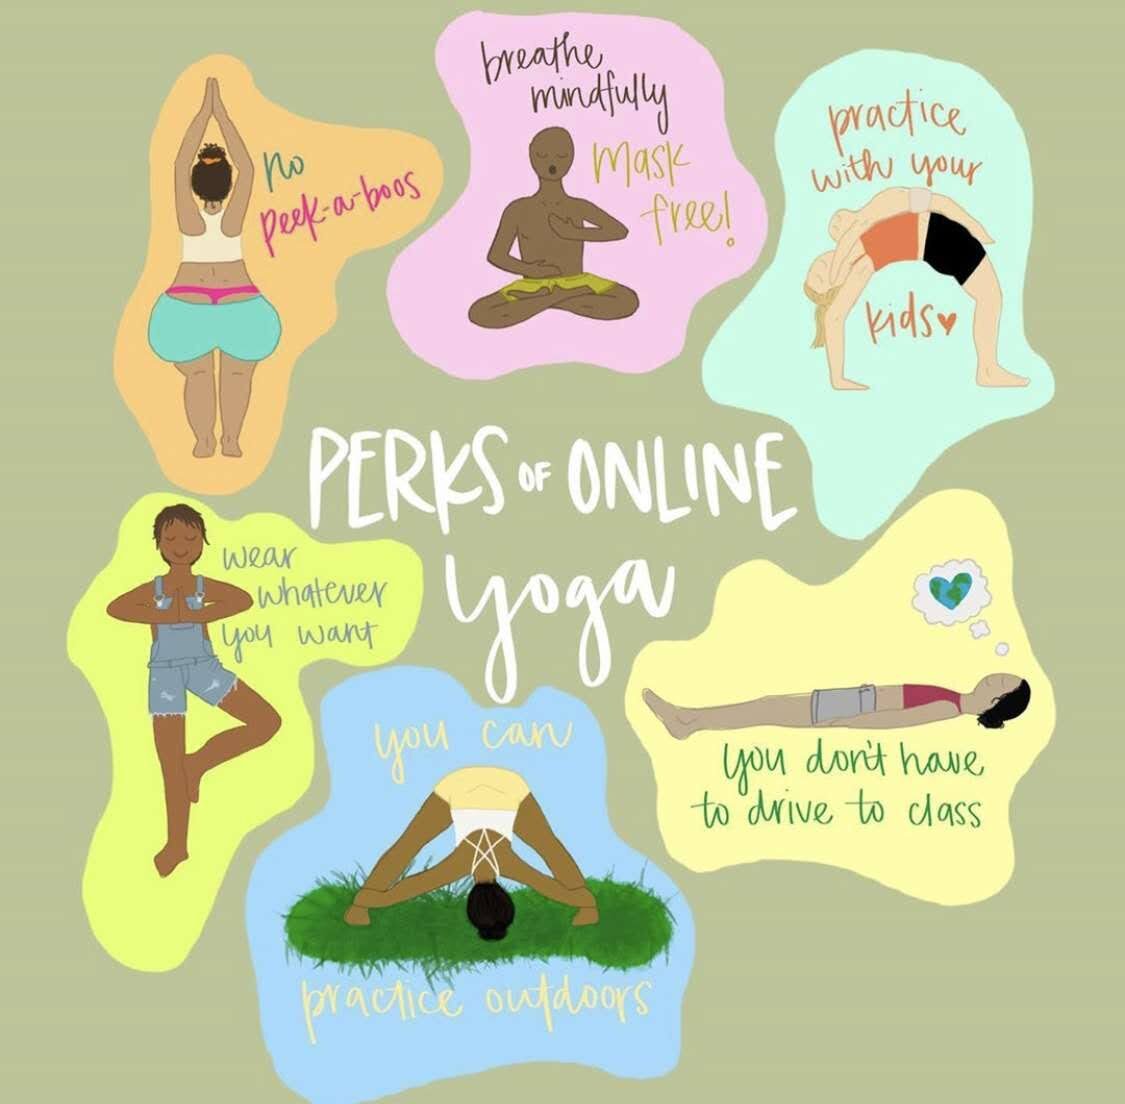 Perks of Online Yoga 2.jpg